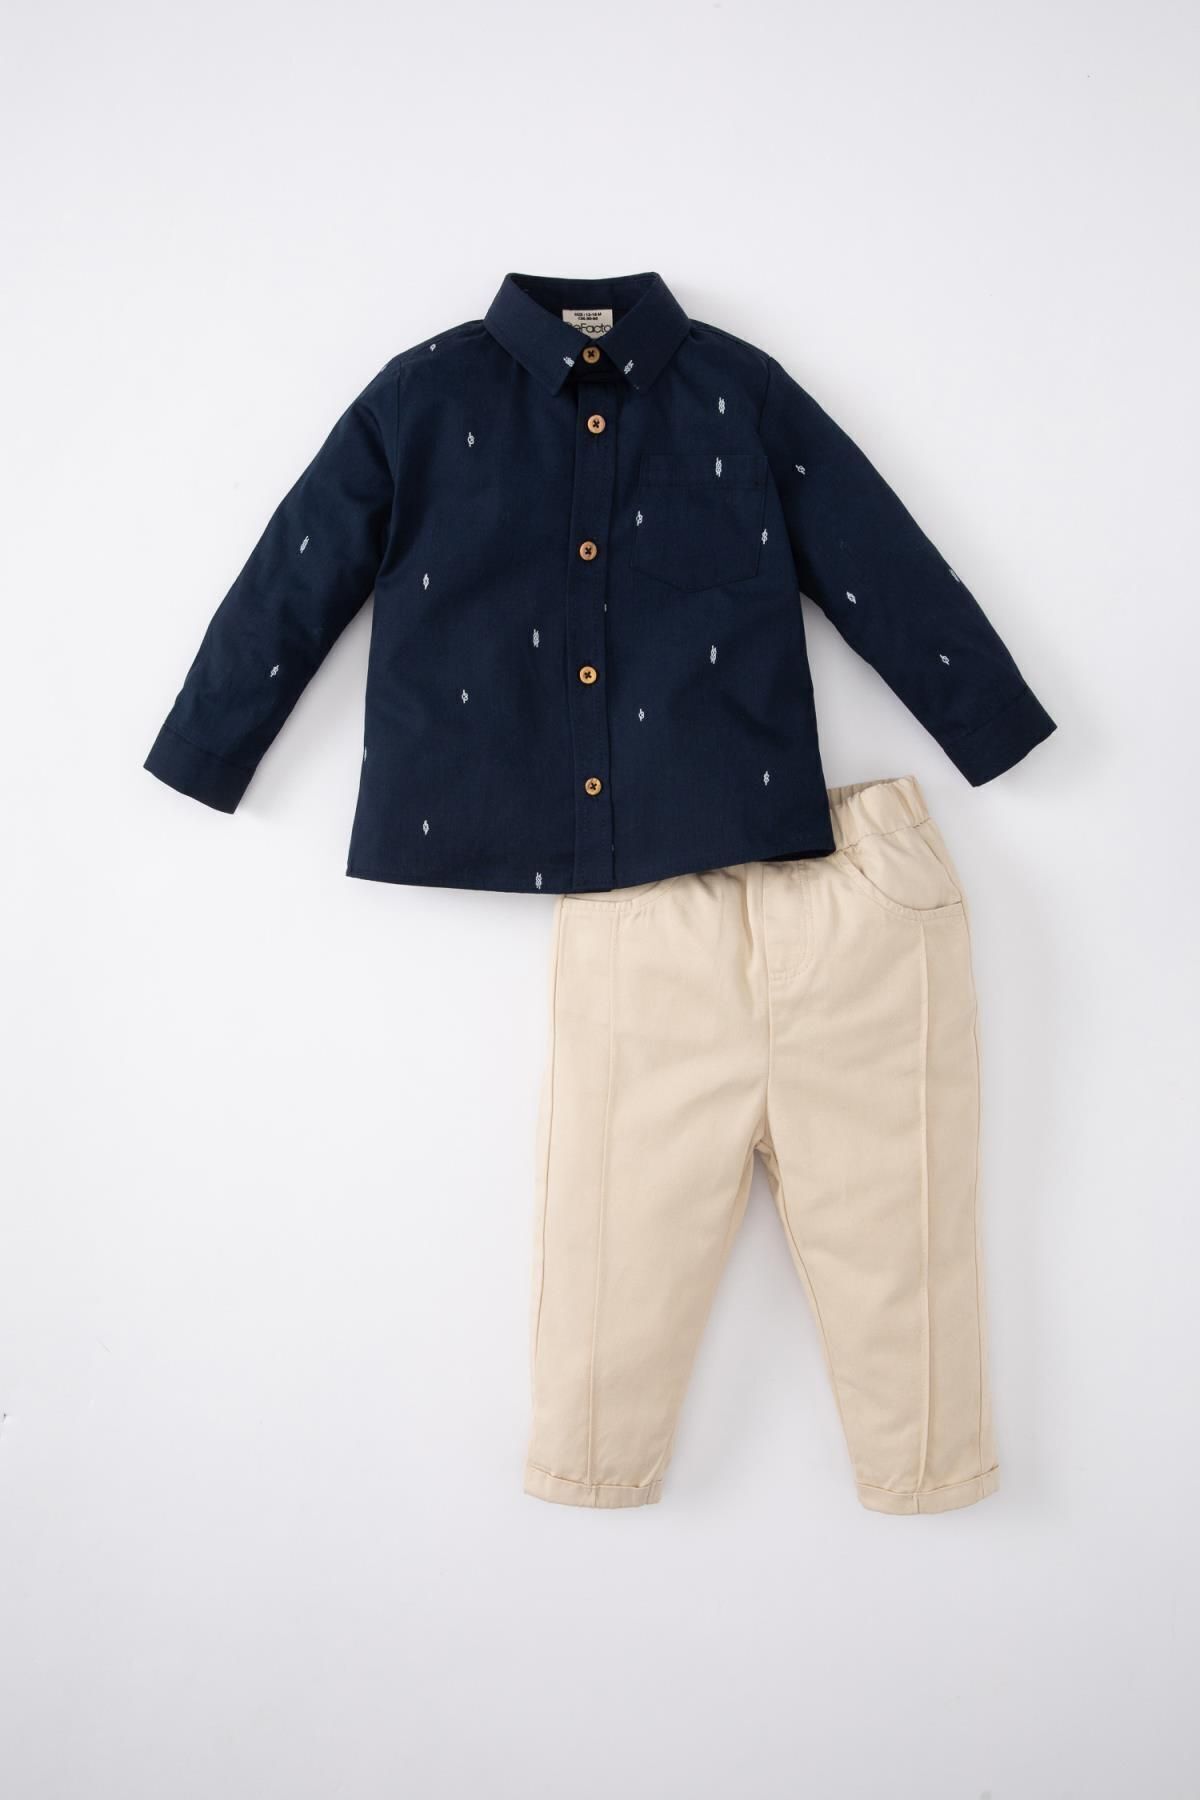 Defacto Erkek Bebek Desenli Twill Gömlek Pantolon 2'li Takım B9255a524sp